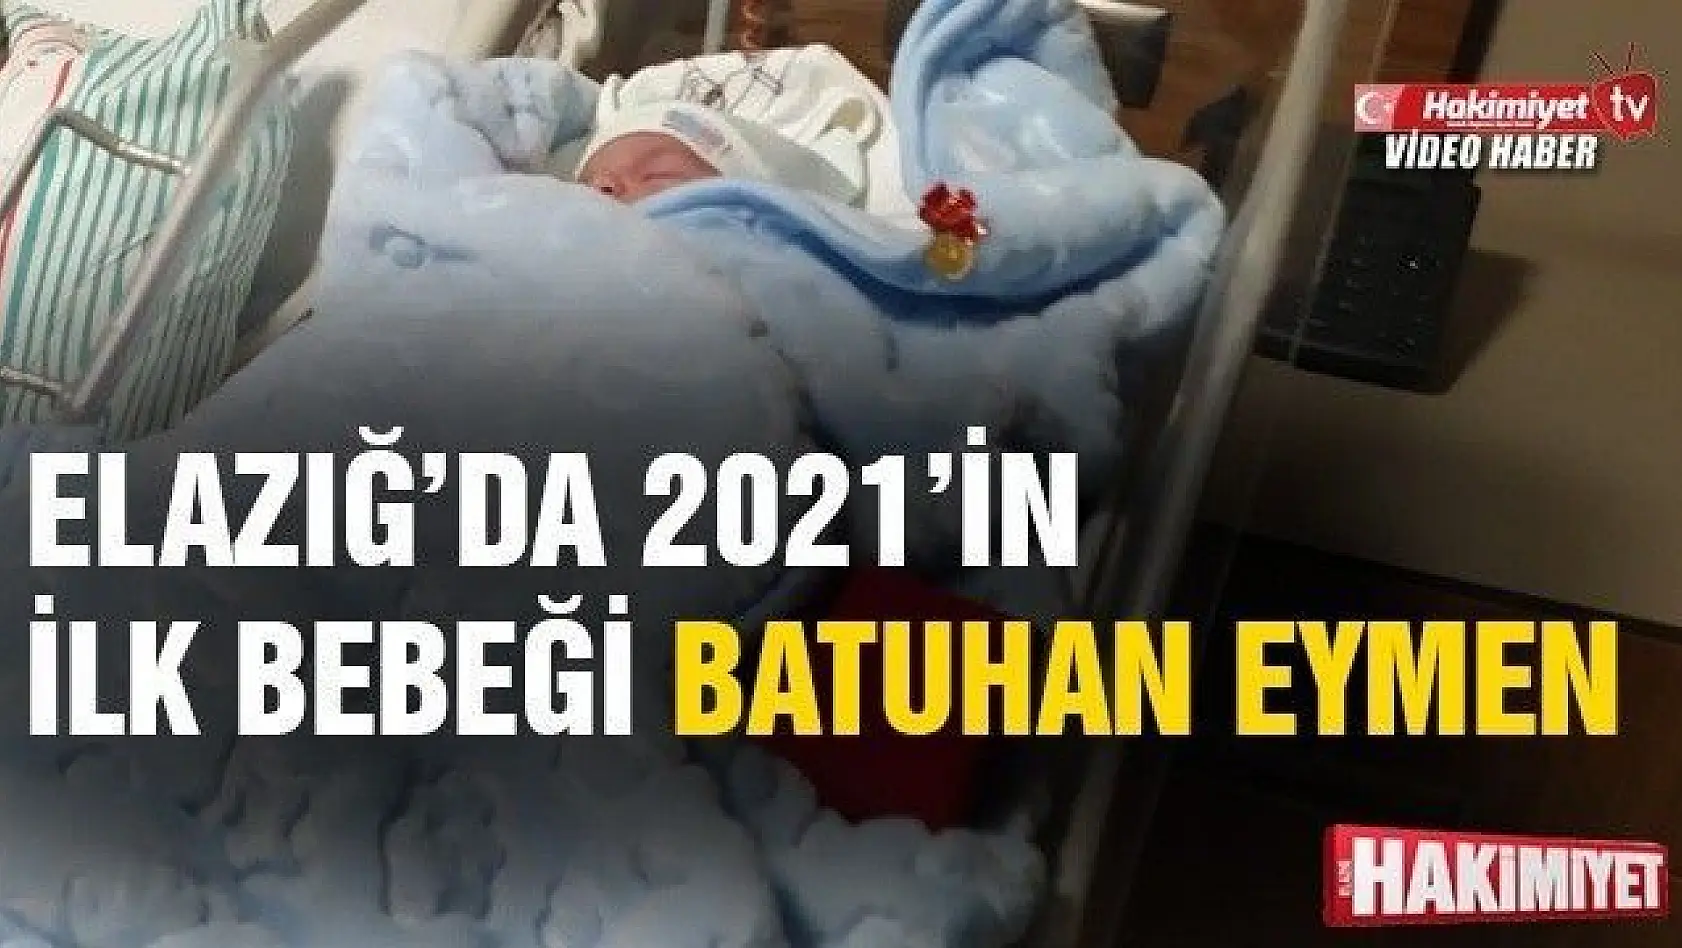 Elazığ'da 2021'in ilk bebeğinin adı Batuhan Eymen oldu